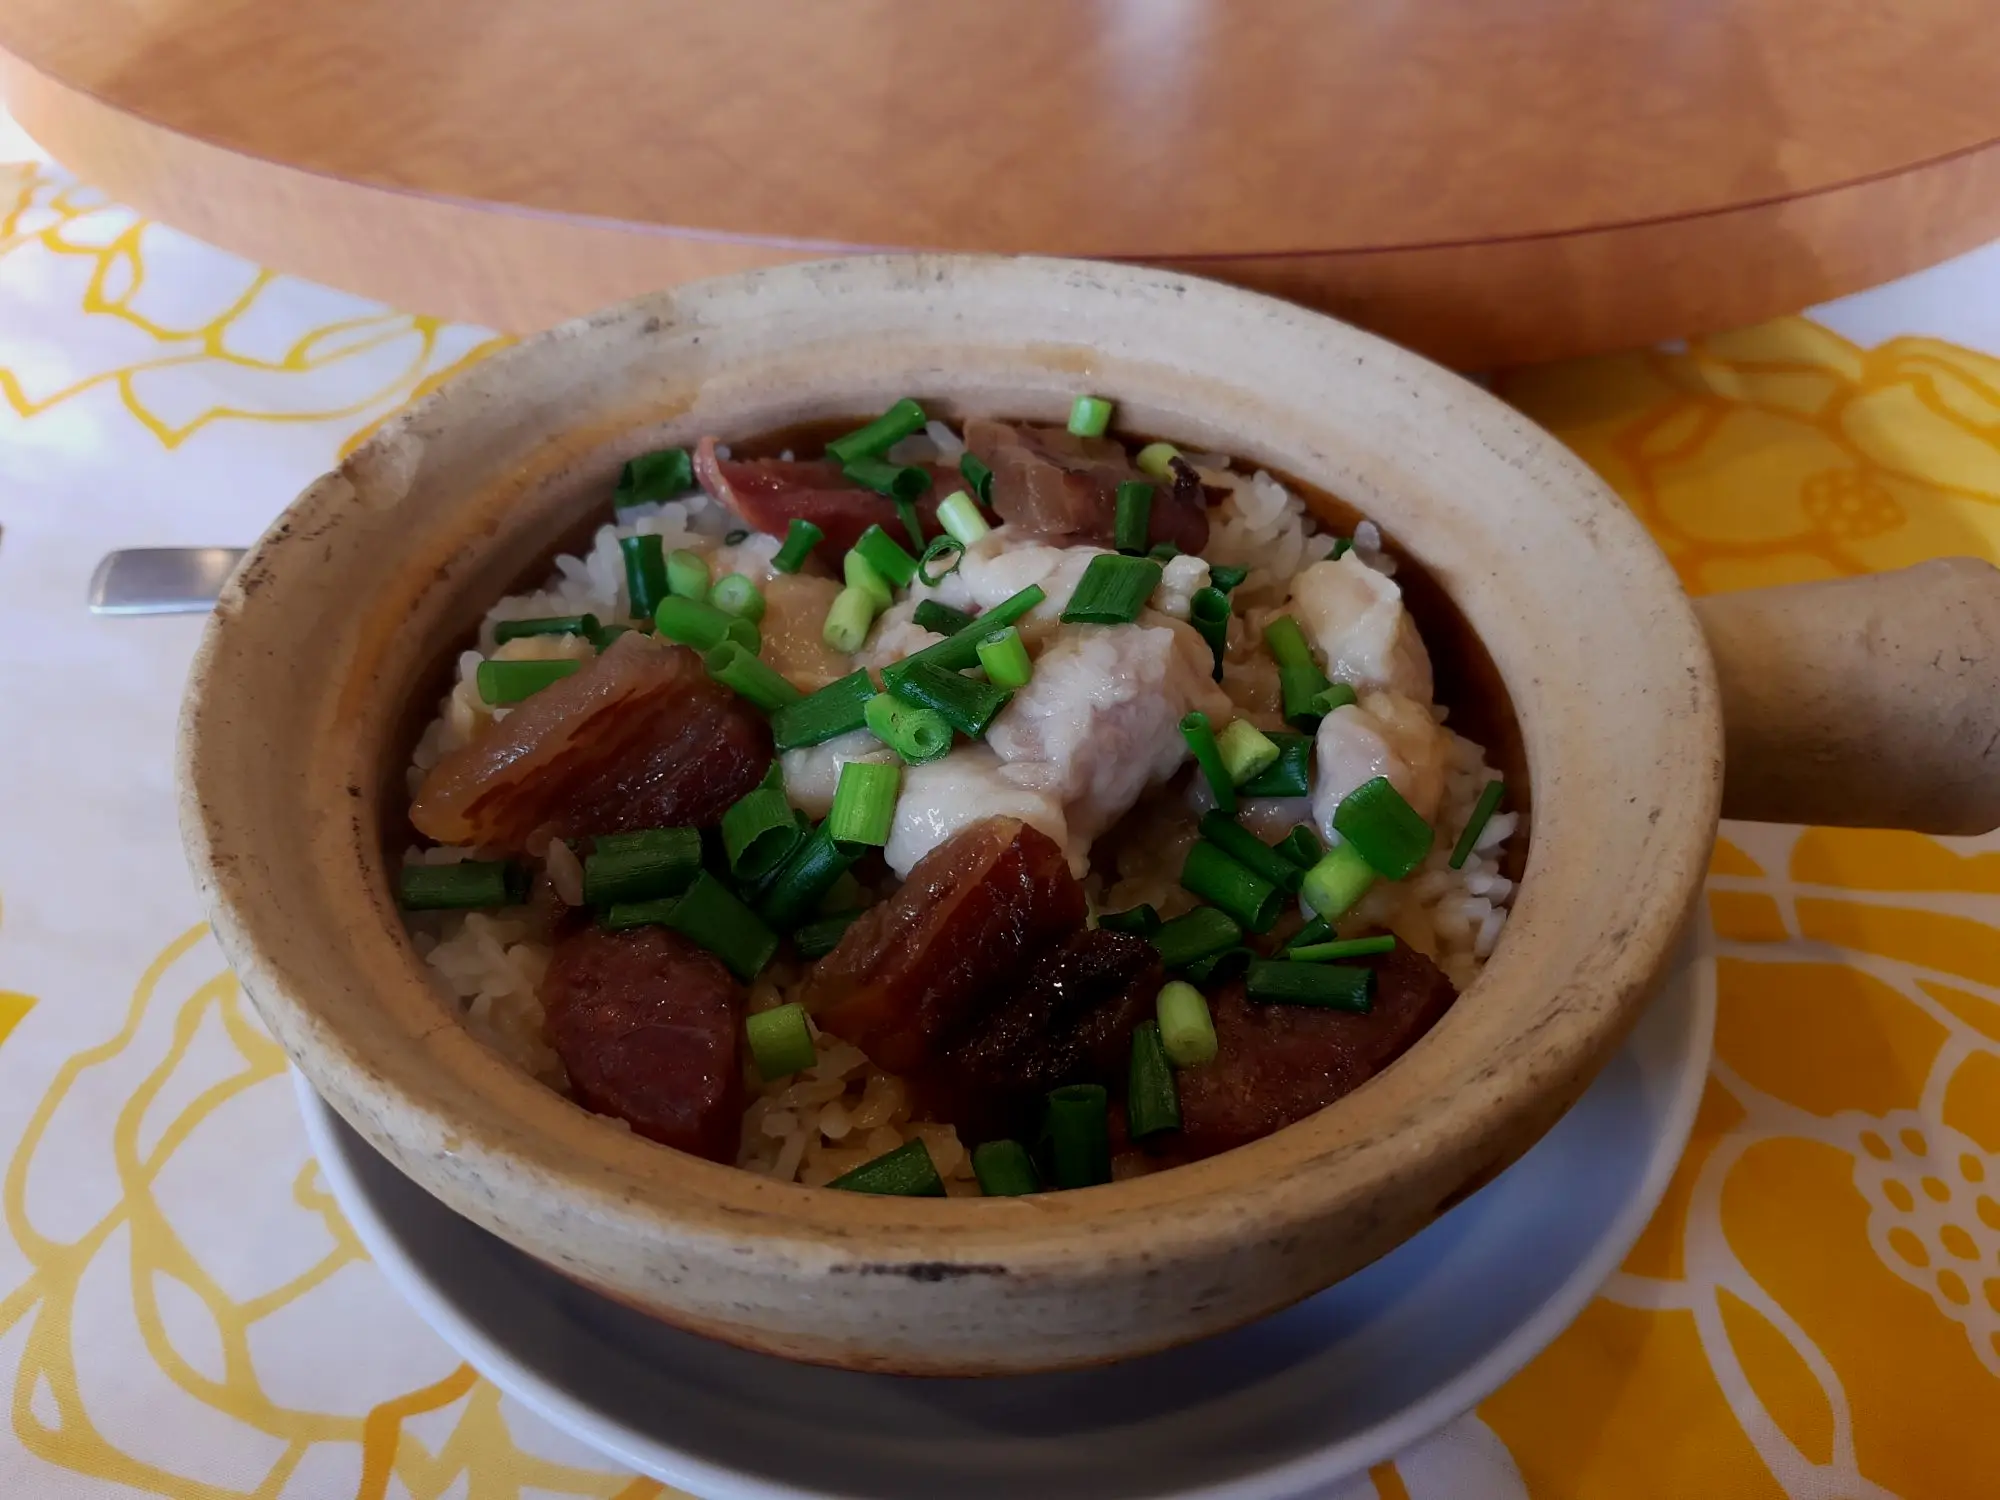 作为一个广东人，不看价格的话，这个腊肠煲宅饭的味道还算正常。